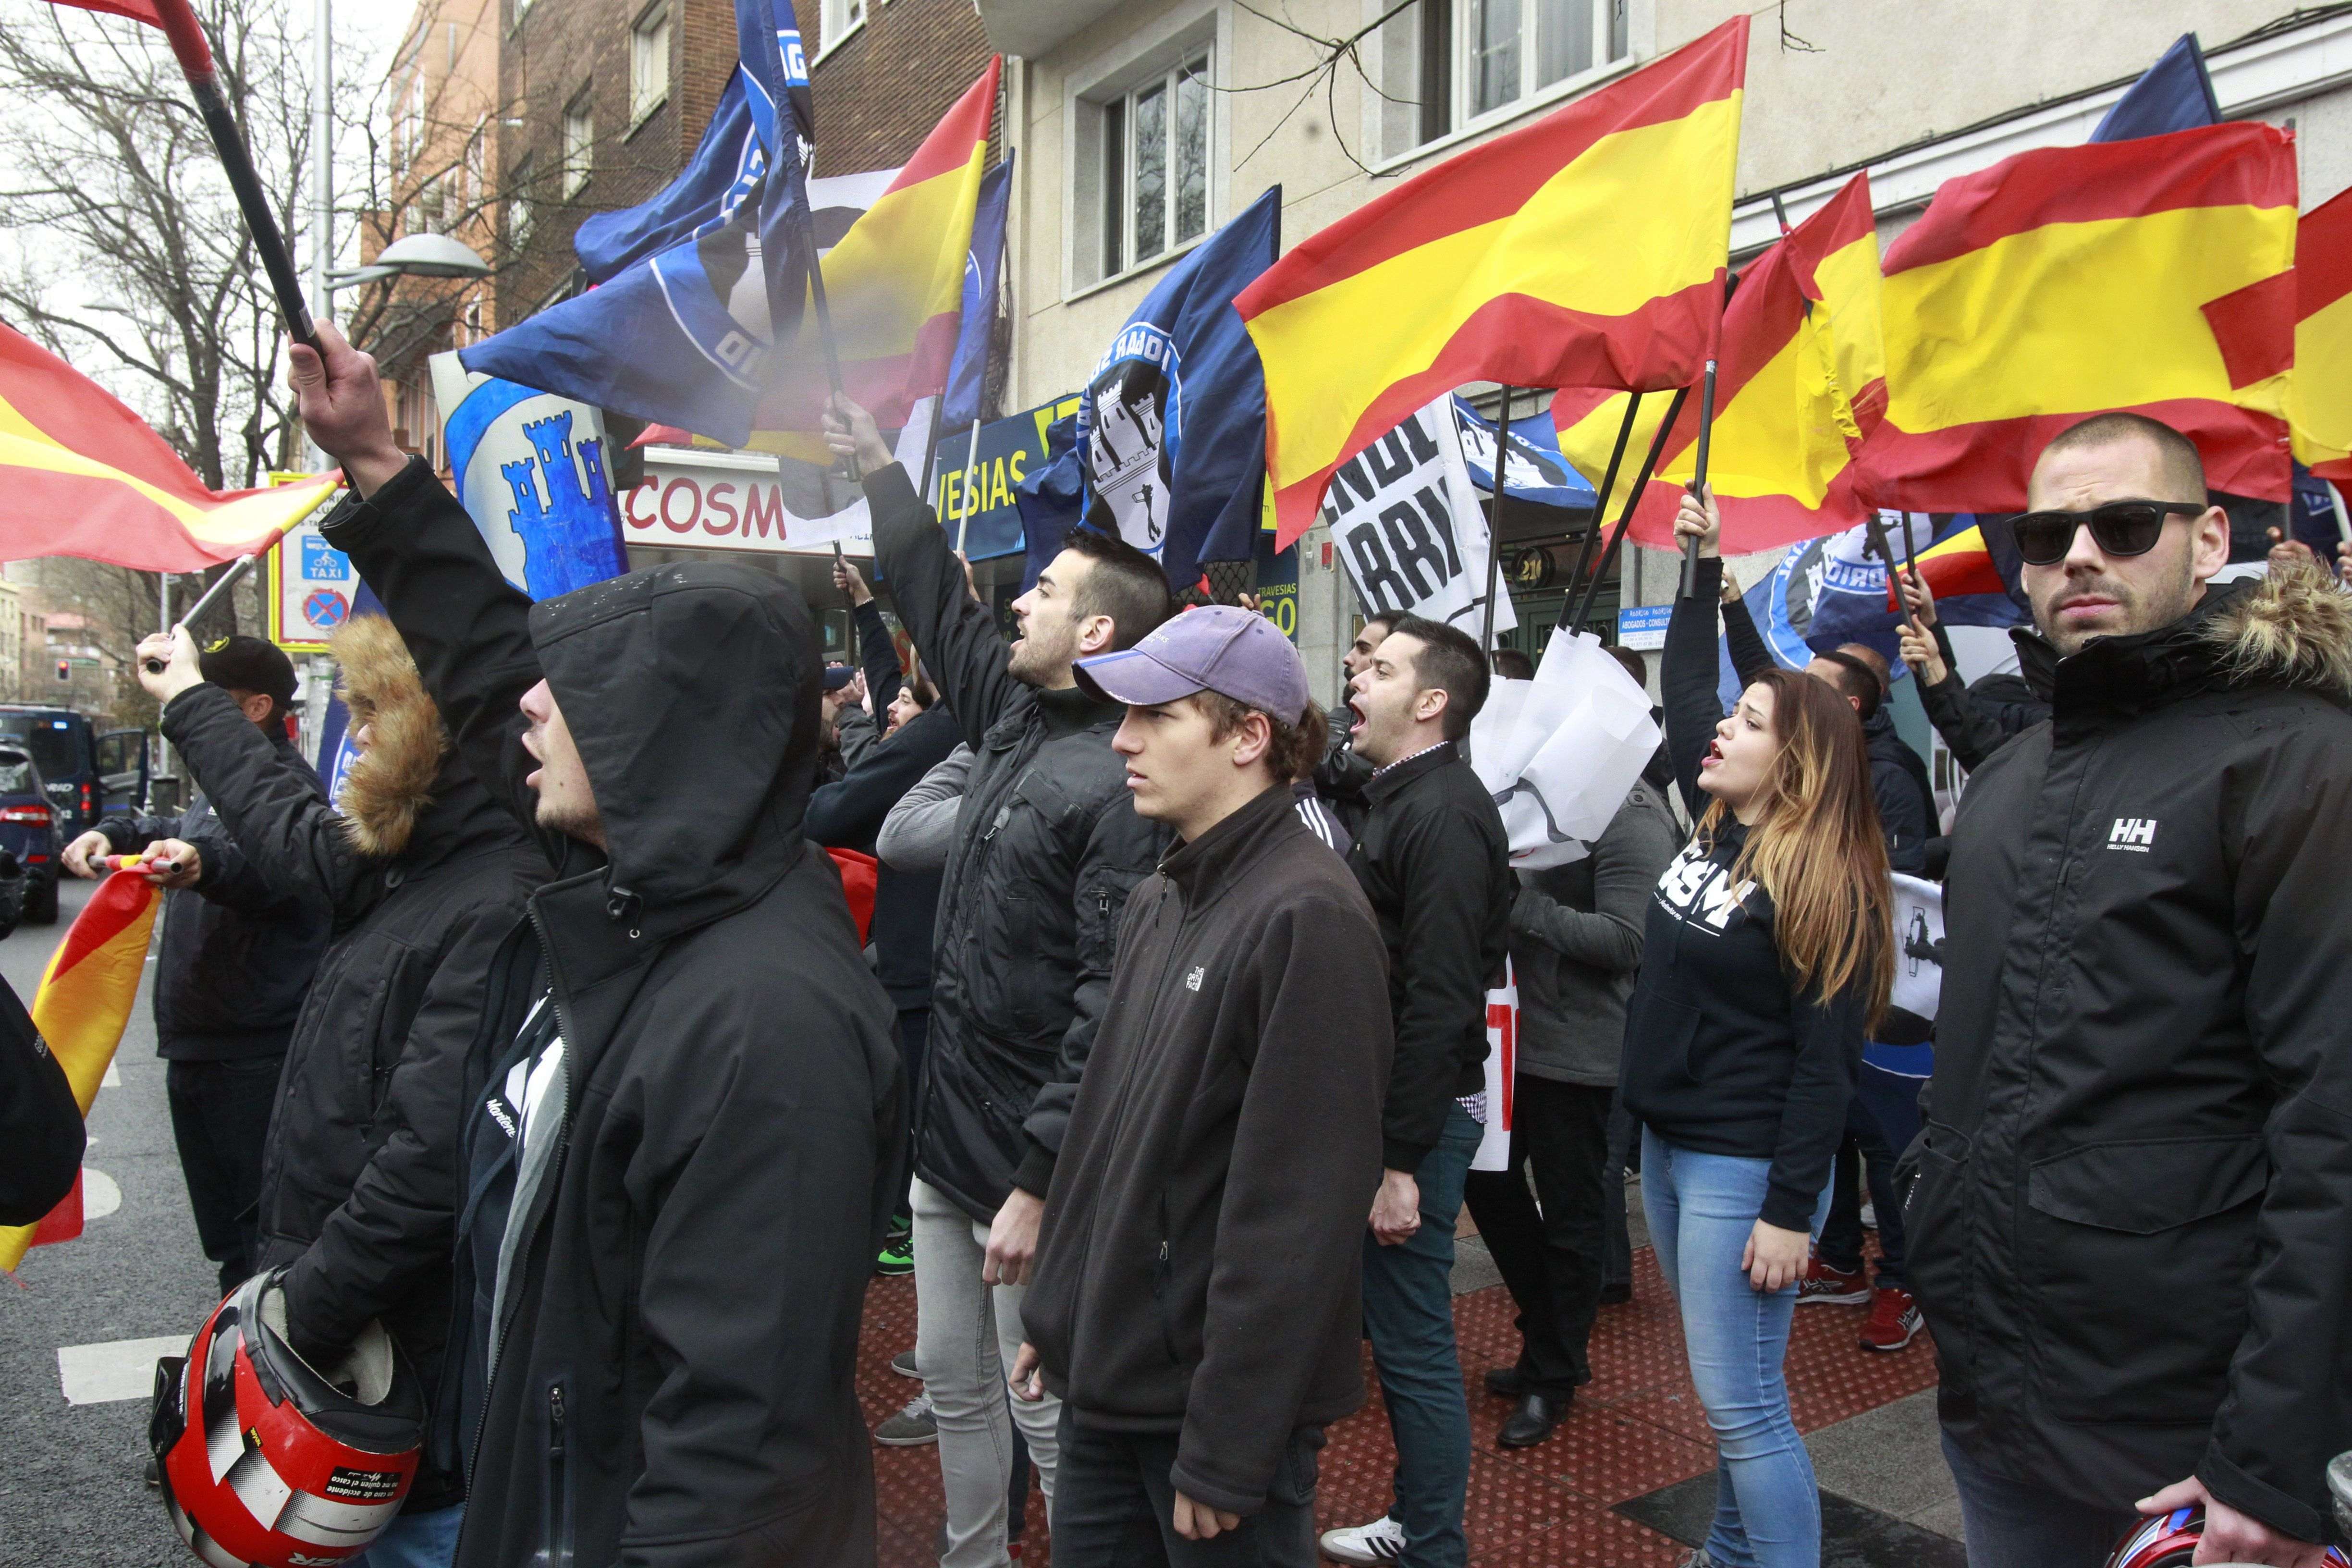 La ultradreta convoca una concentració a Barcelona aquest dissabte